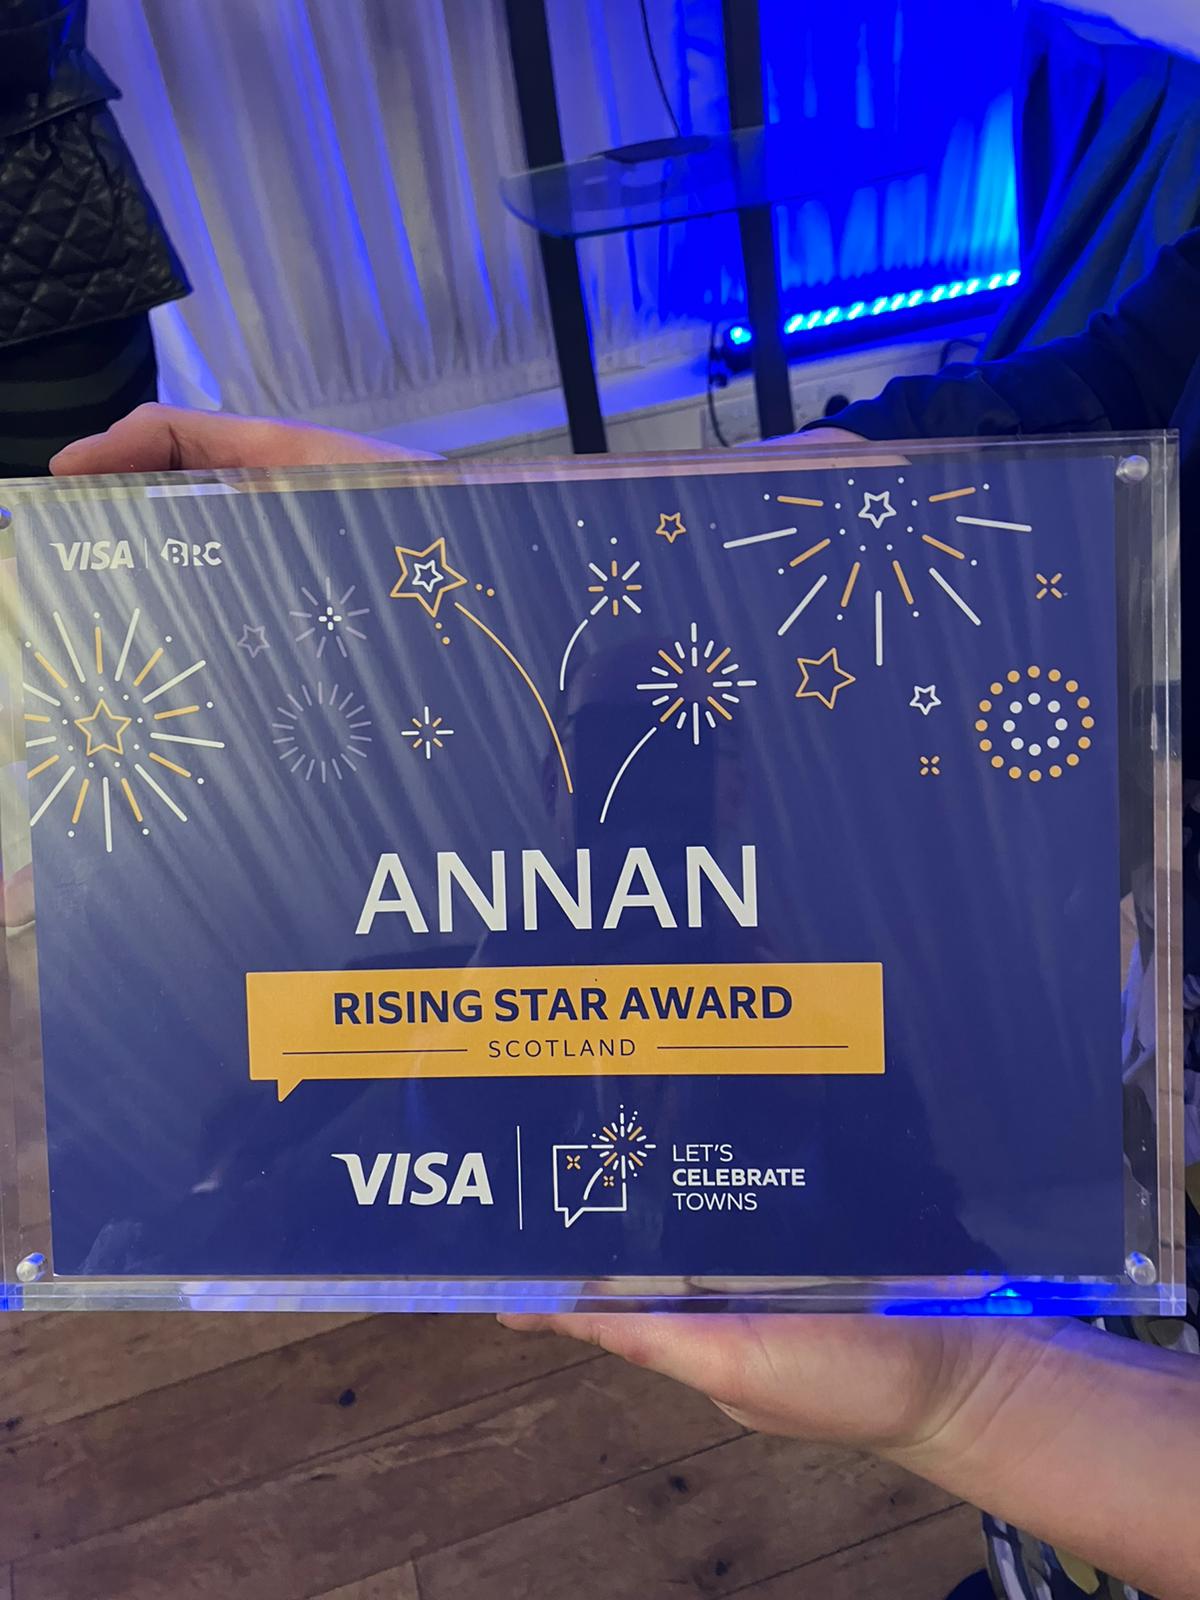 Annan named a rising star